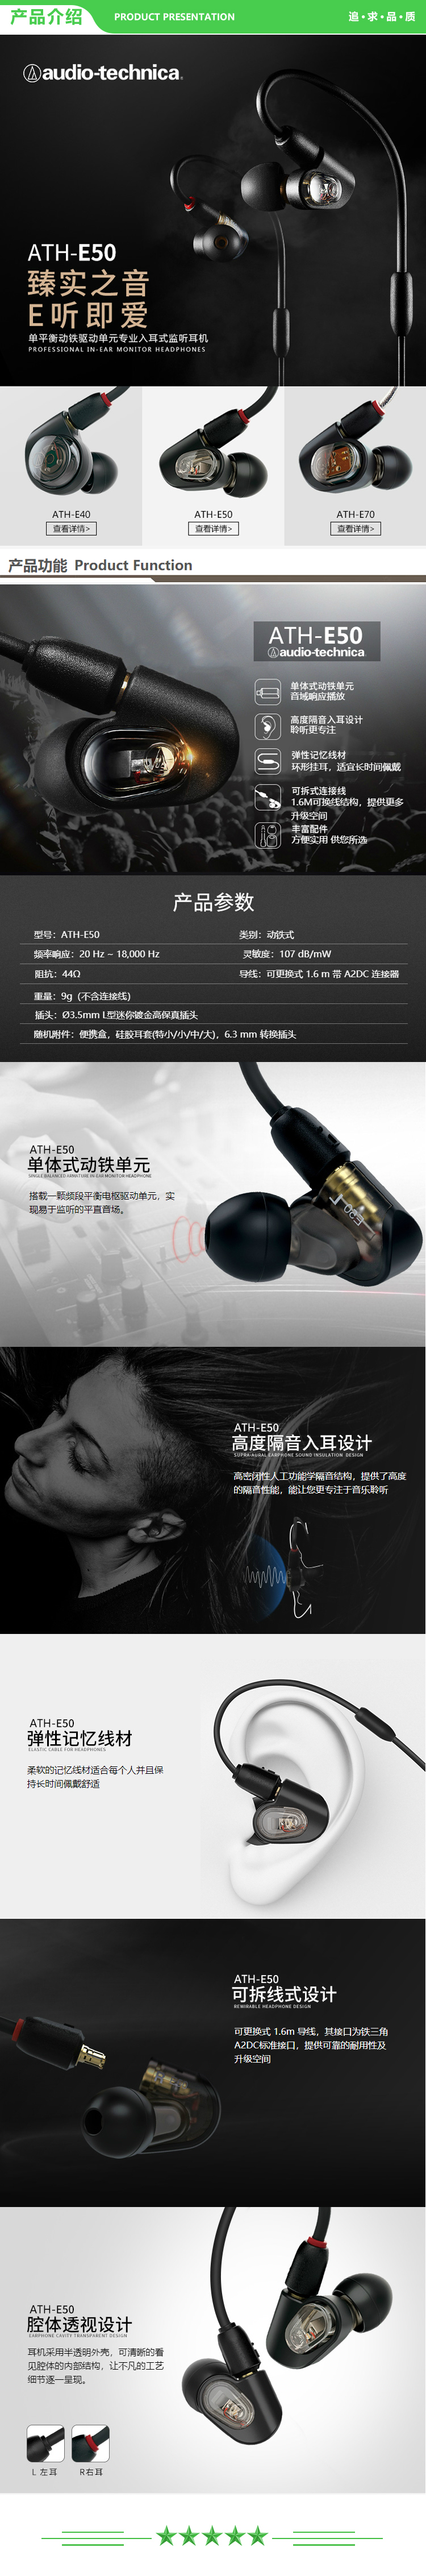 铁三角 Audio-technica ATH-E50 专业监听动铁入耳式耳机 单体式动铁单元 HIFI 三频均衡  .jpg